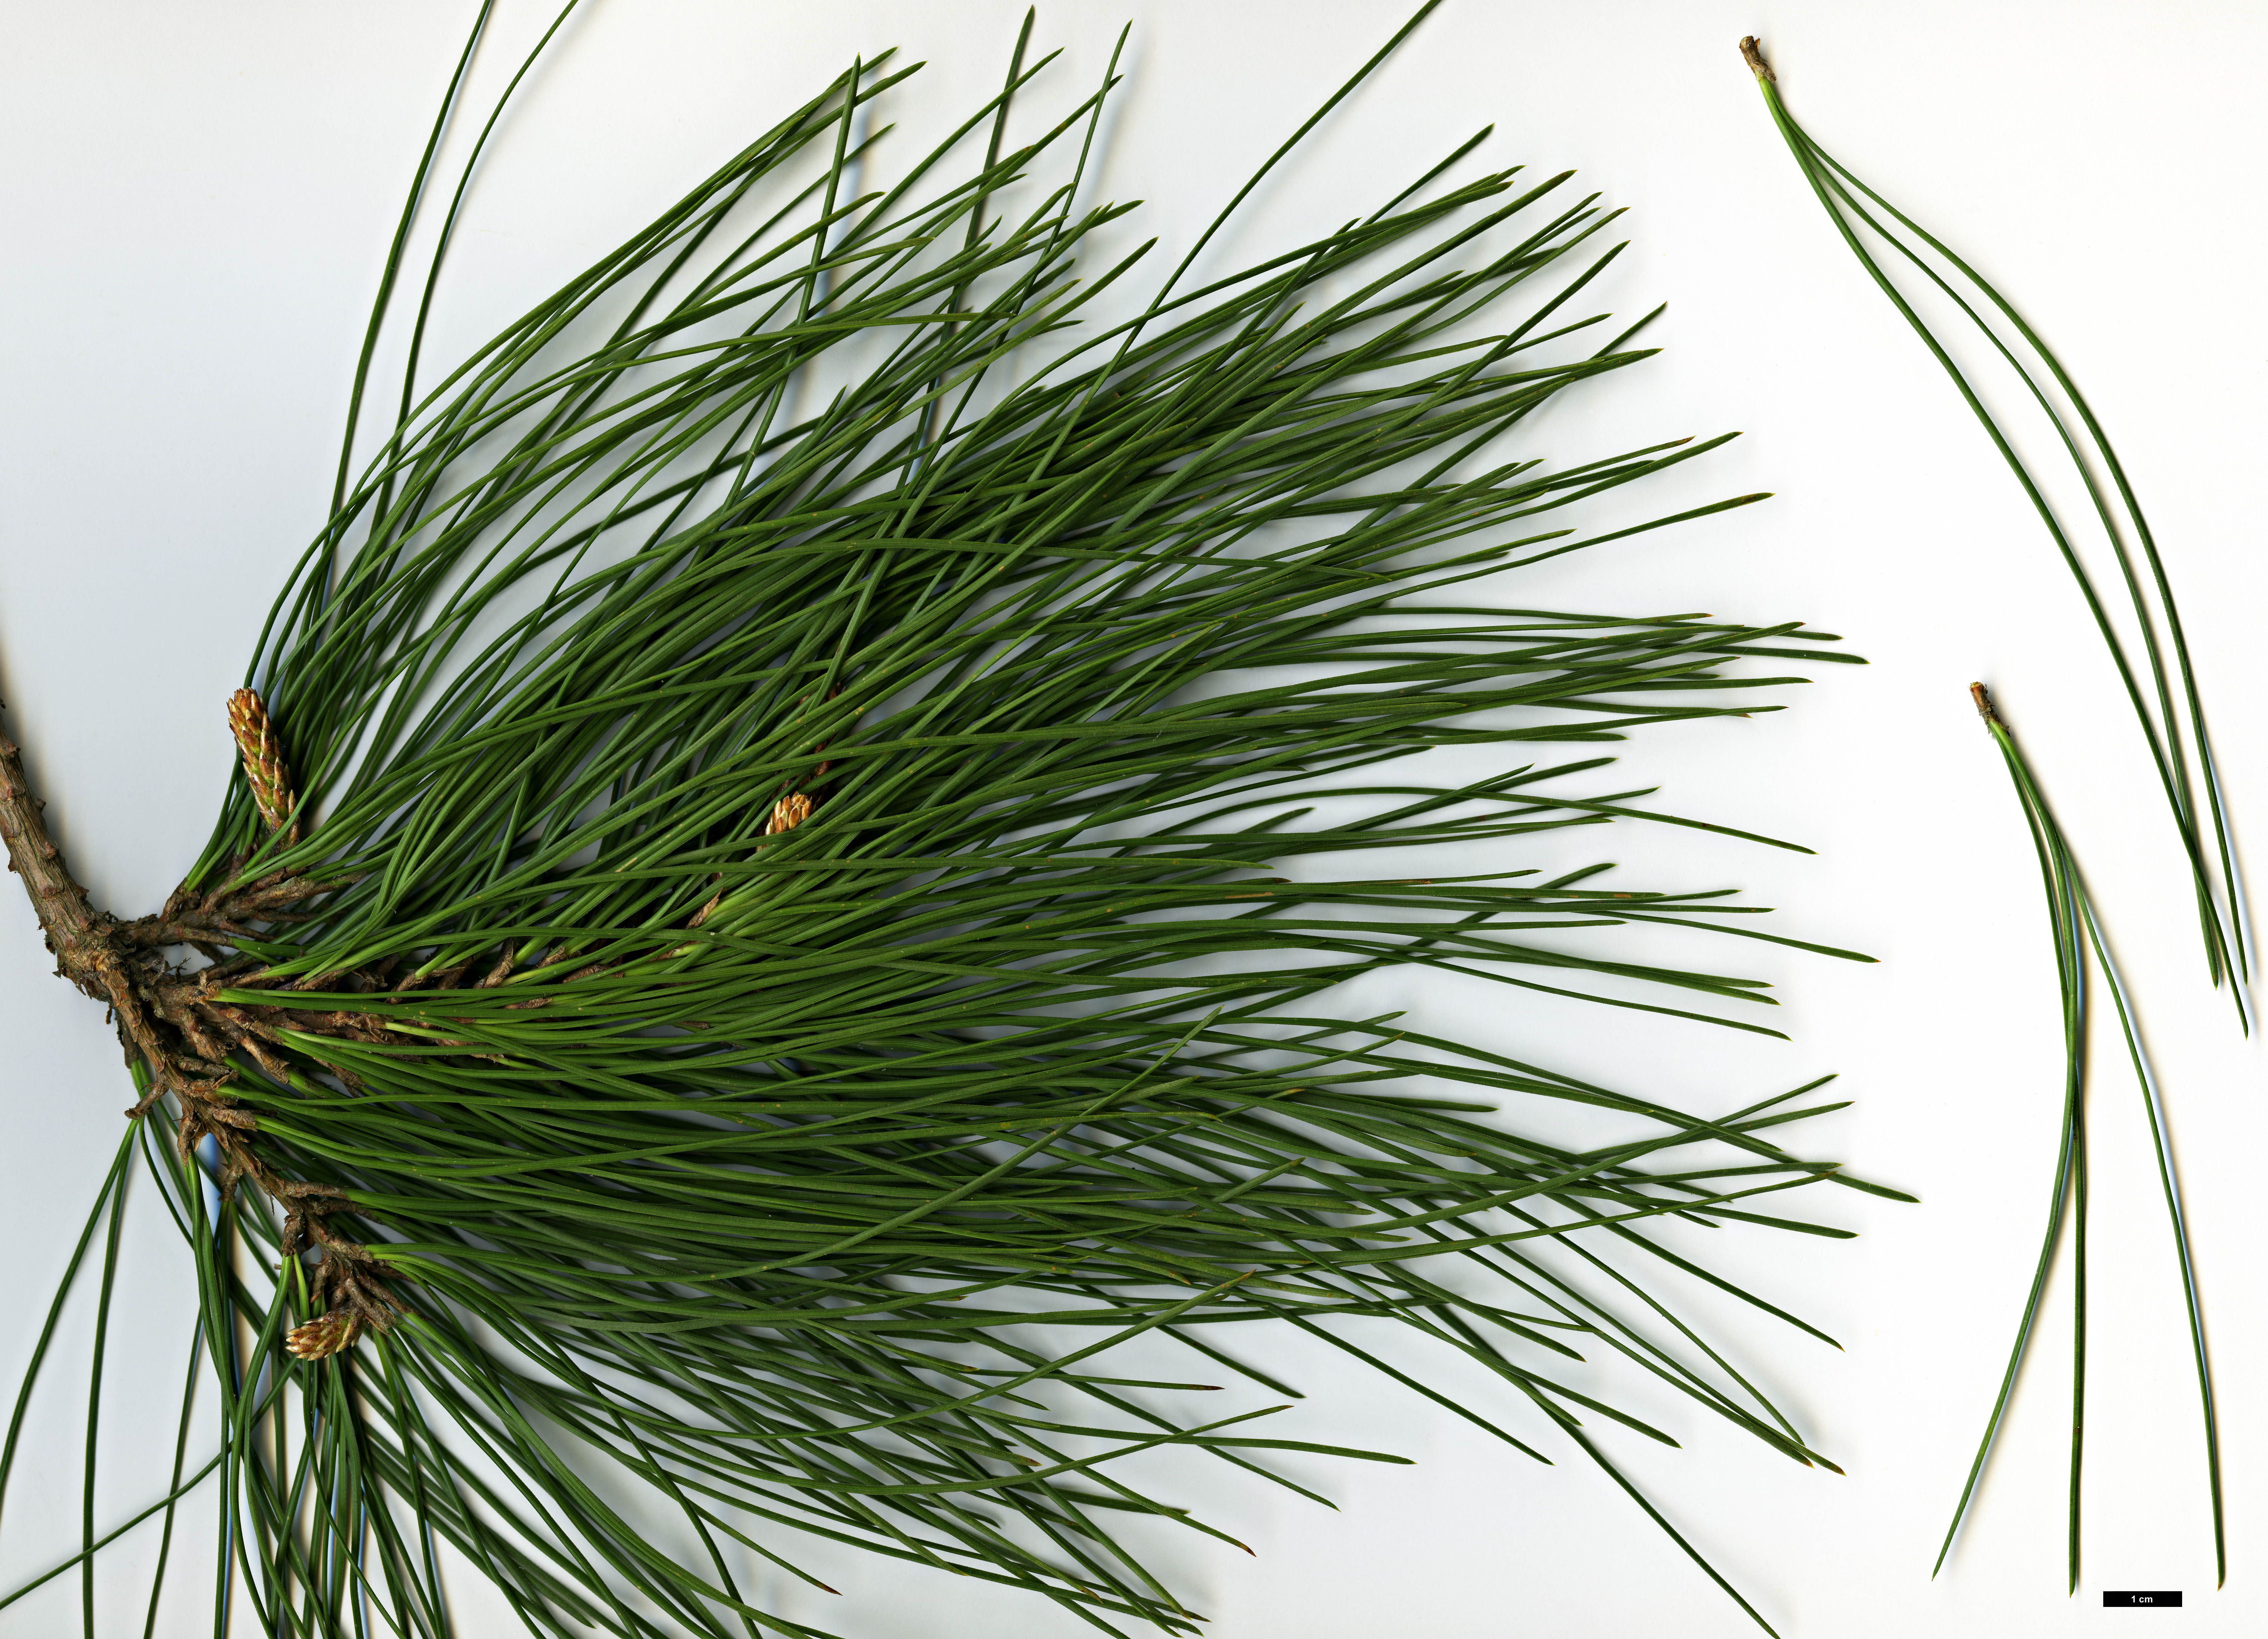 High resolution image: Family: Pinaceae - Genus: Pinus - Taxon: ×attenuradiata - SpeciesSub: (P.attenuata × P.radiata)